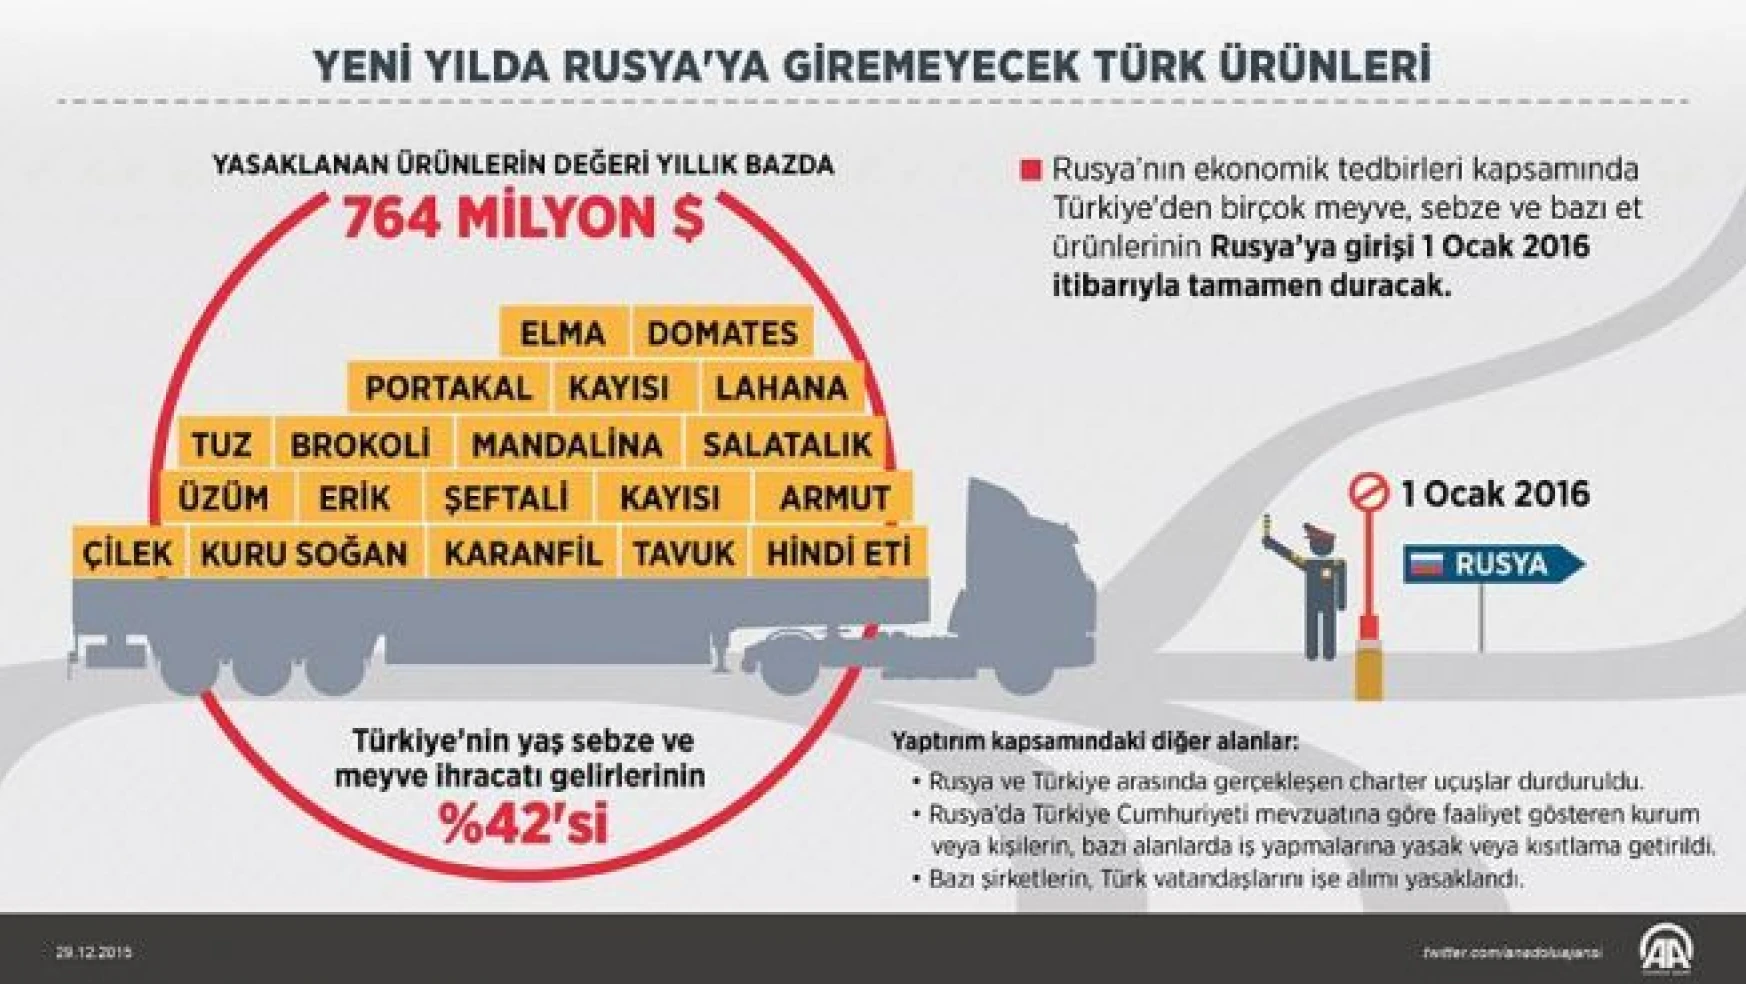 Yeni yılda Rusya'ya giremeyecek Türk ürünleri